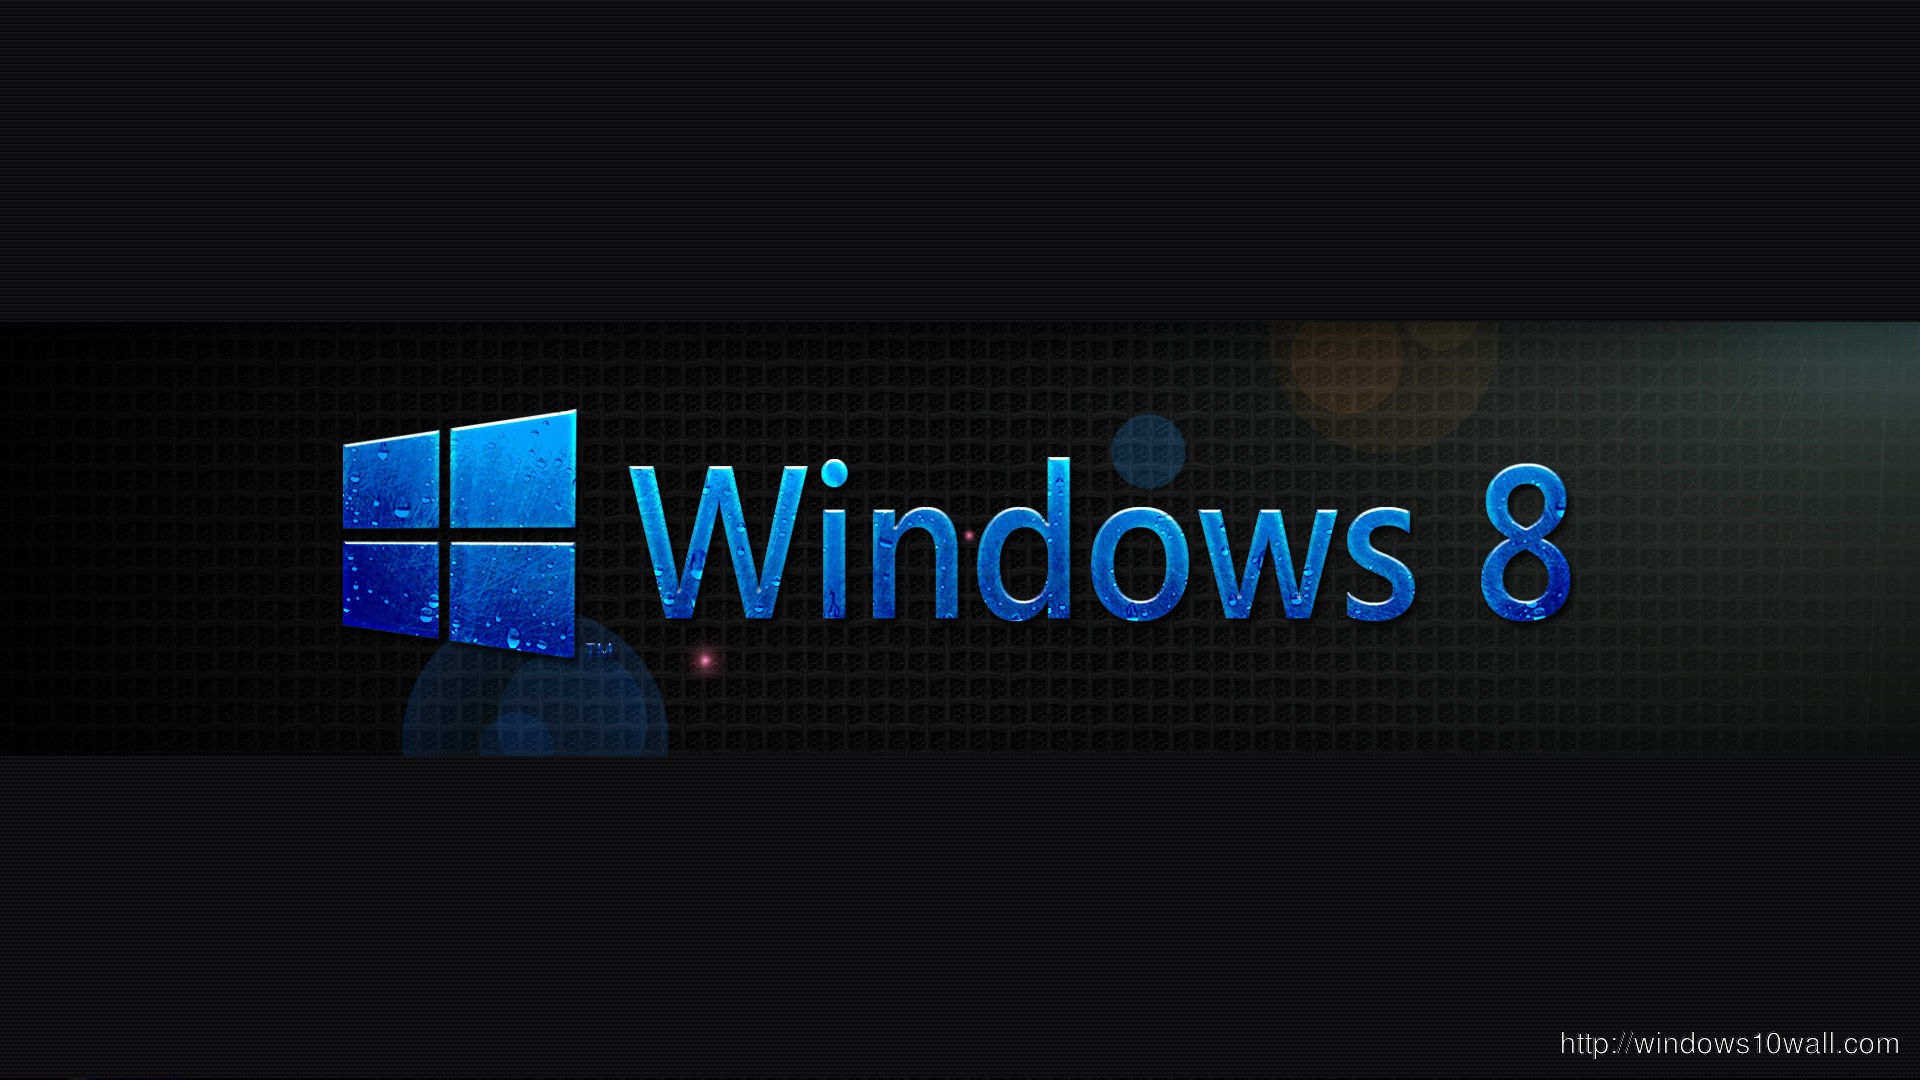 Windows 8 Background Wallpaper in HD